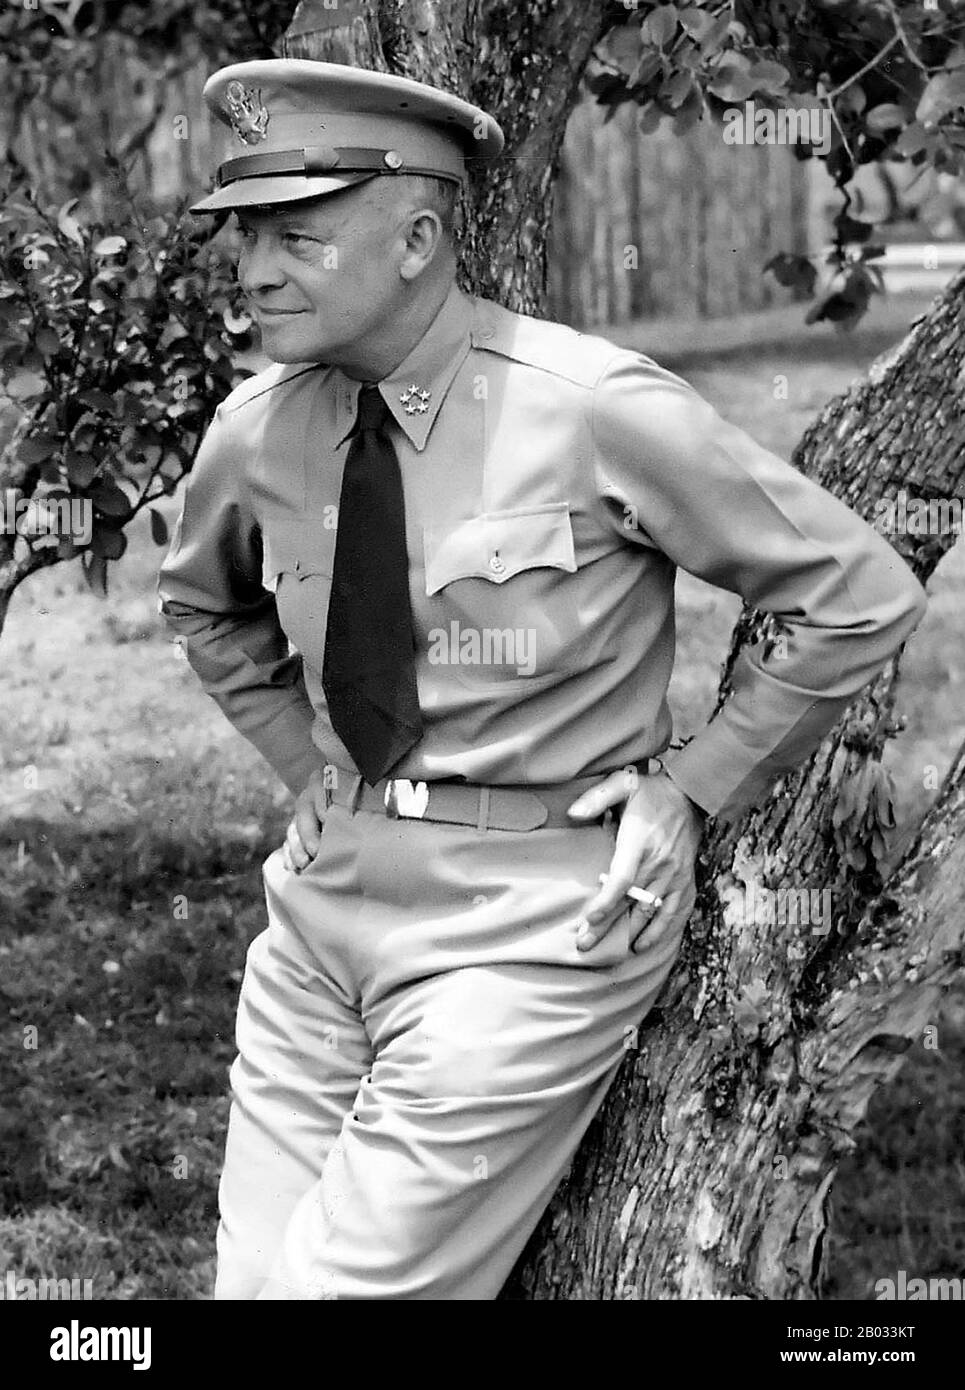 Dwight David 'Ike' Eisenhower (14. Oktober 1890 - 28. März 1969) war ein US-amerikanischer Politiker und General, der von 1953 bis 1961 als 34. Präsident der Vereinigten Staaten tätig war. Er war während des zweiten Weltkriegs Fünf-Sterne-General in der United States Army und diente als Oberster Befehlshaber der alliierten Streitkräfte in Europa. Eisenhower war für die Planung und Überwachung der Invasion Nordafrikas in Der Operation Torch in den Jahren 1942-43 und der erfolgreichen Invasion Frankreichs und Deutschlands in den Jahren 1944-45 von der Westfront verantwortlich. 1951 wurde er der erste Oberste Befehlshaber der NATO. Stockfoto